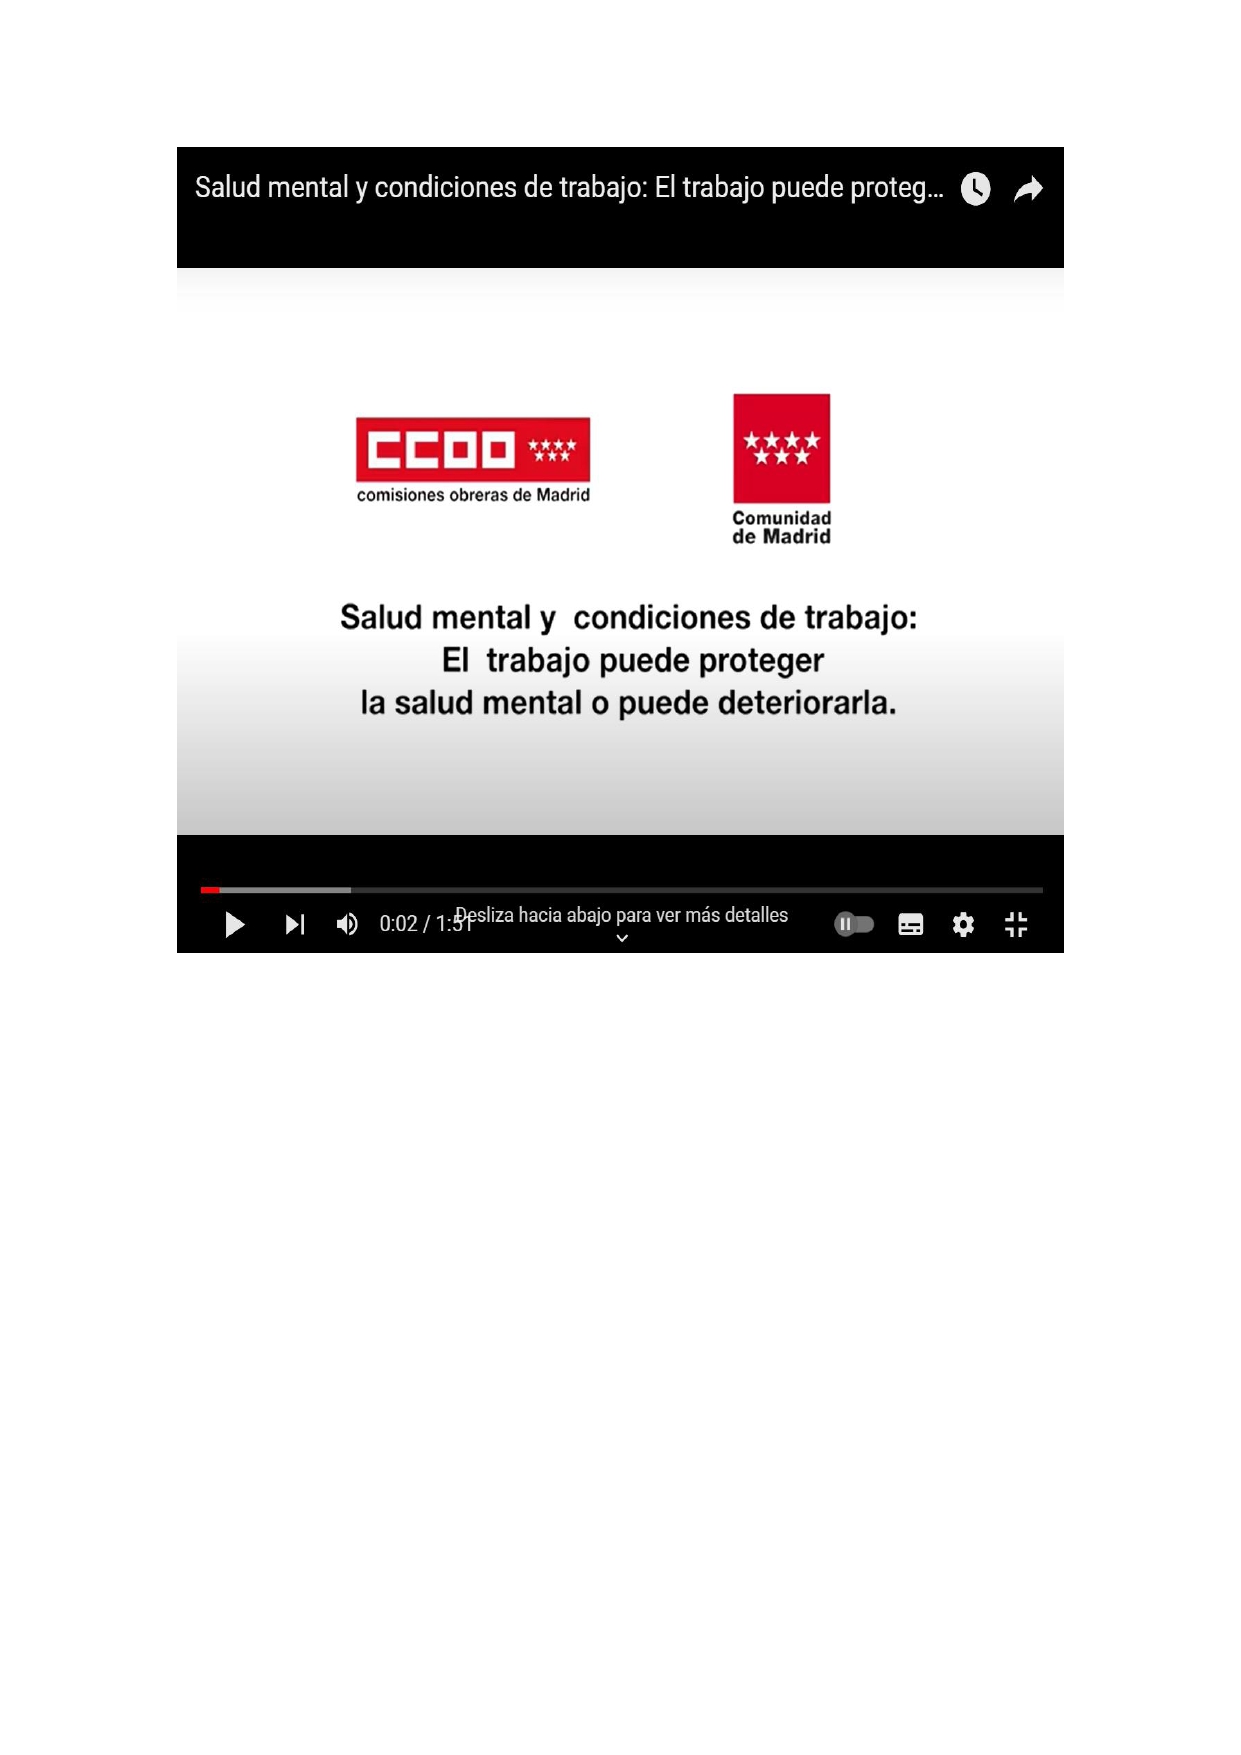 VIDEO RIESGOS PSICOSOCIALES SALUD MENTAL Y CONDICIONES DE TRABAJO. CCOO Madrid 